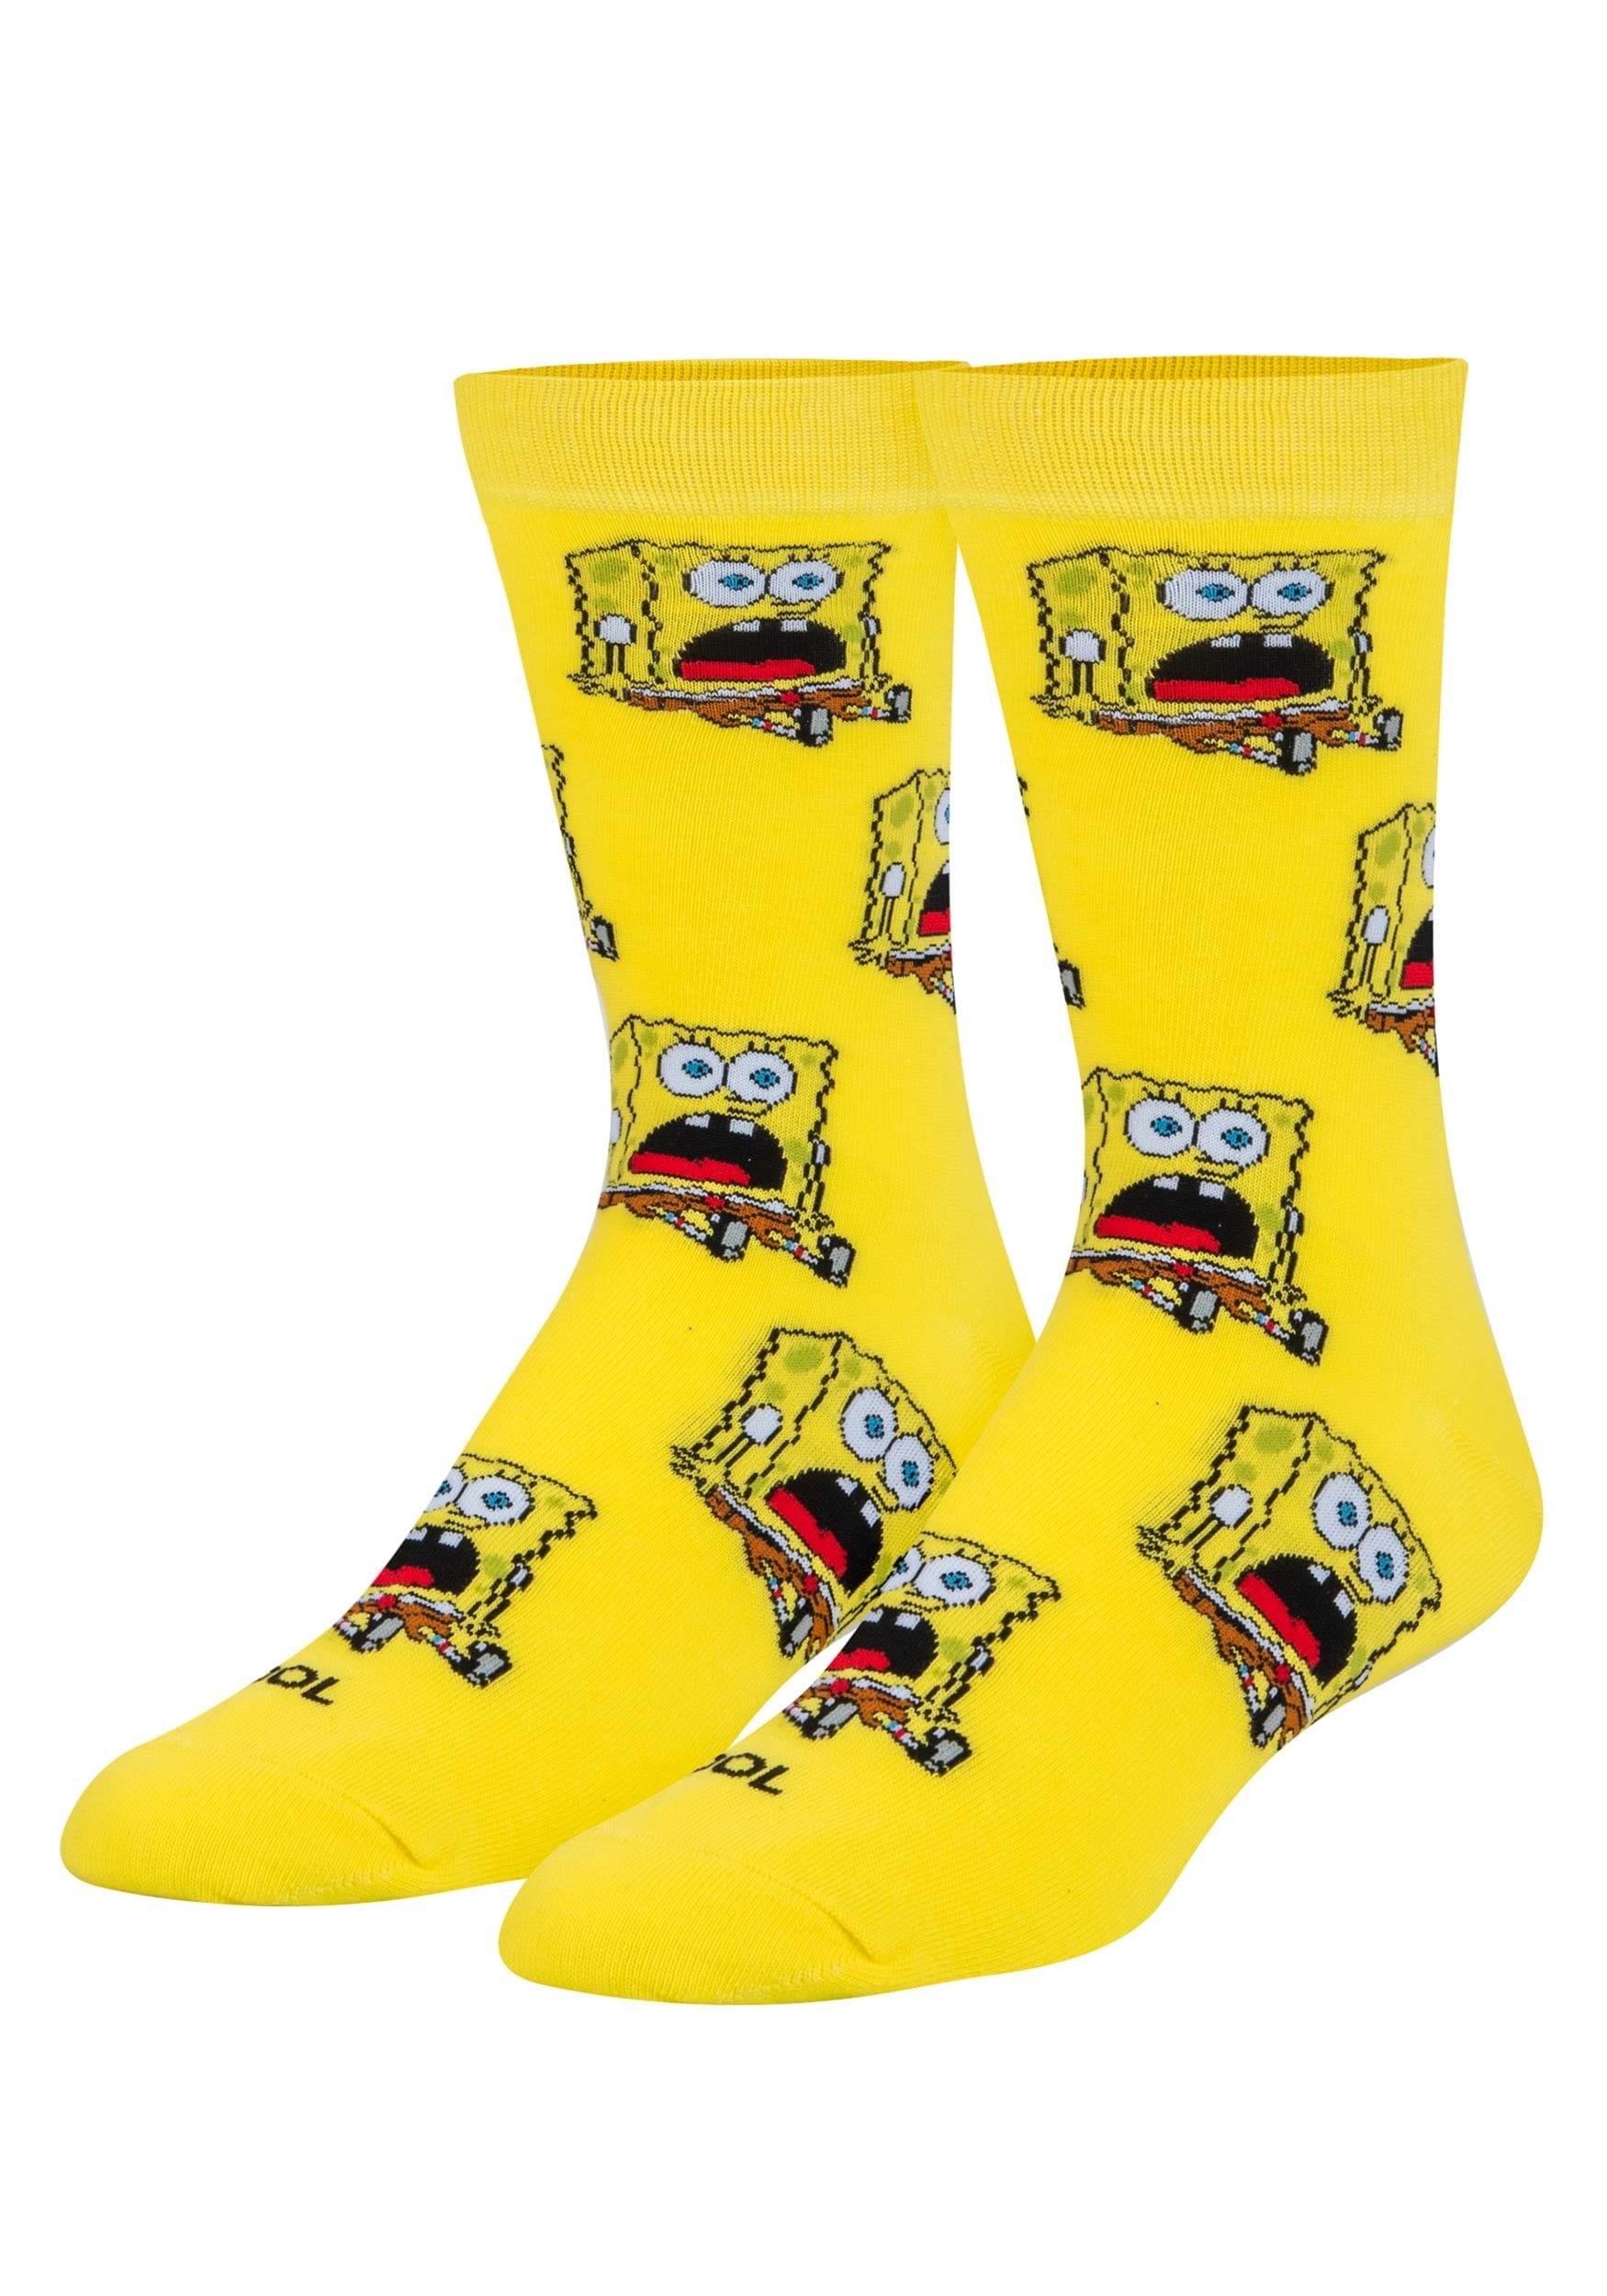 Crew Sock Surprised Spongebob